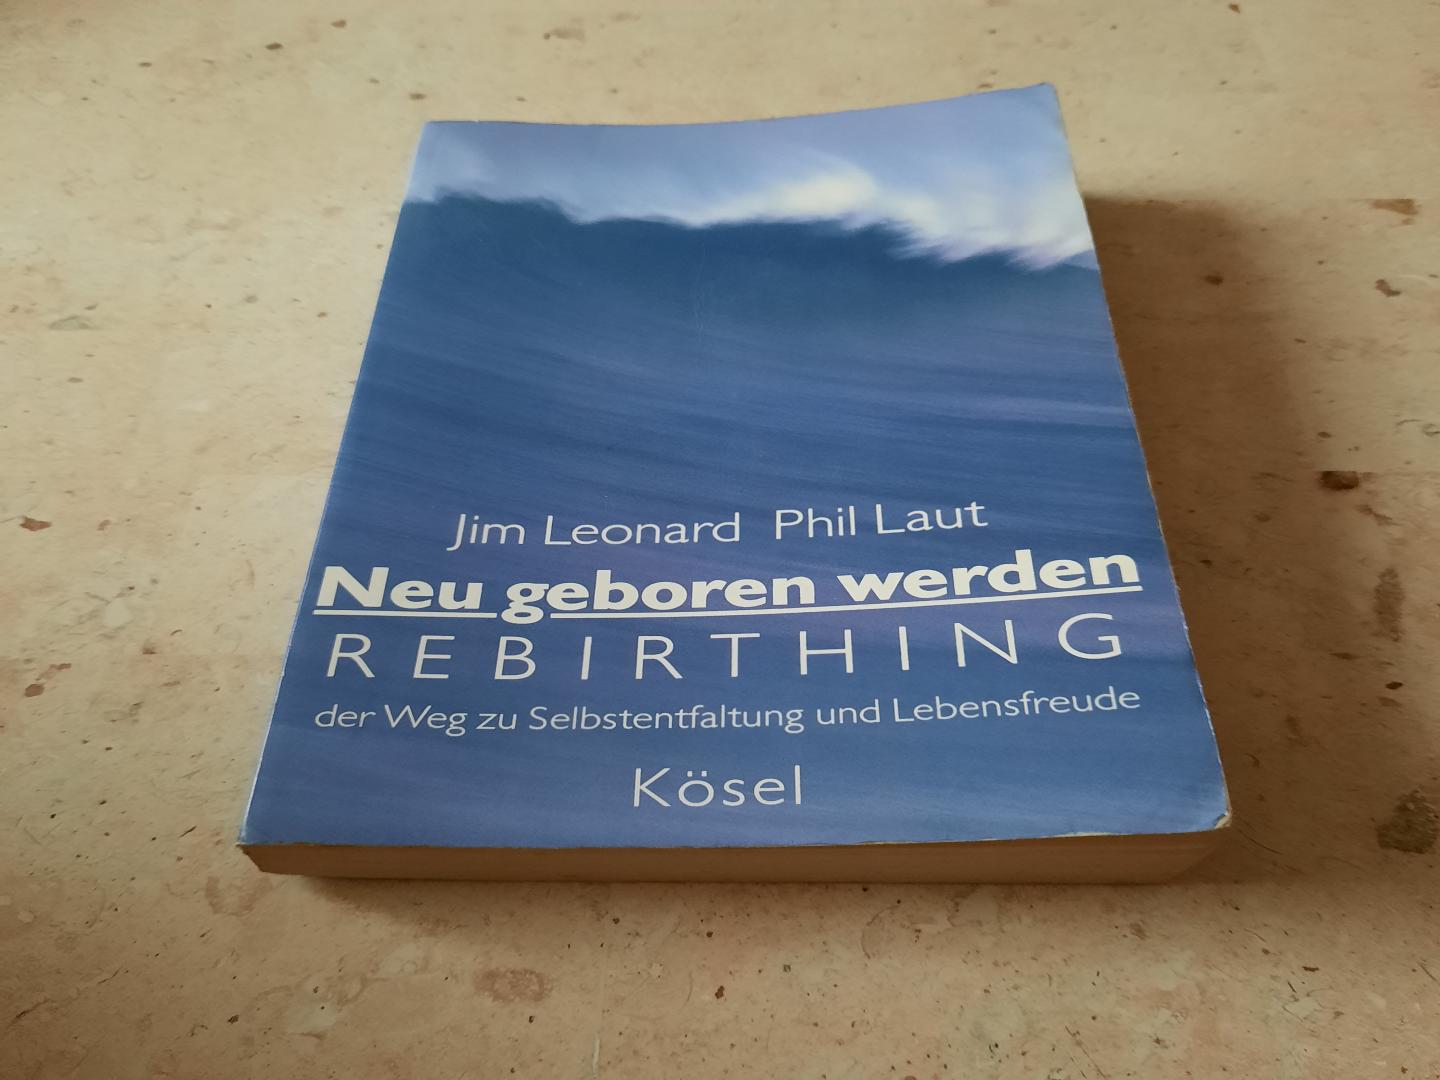 Jim Leonard, Phil Laut - Neu geboren werden. Rebirthing: der Weg zur Selbstentfaltung u. Lebensfreude.